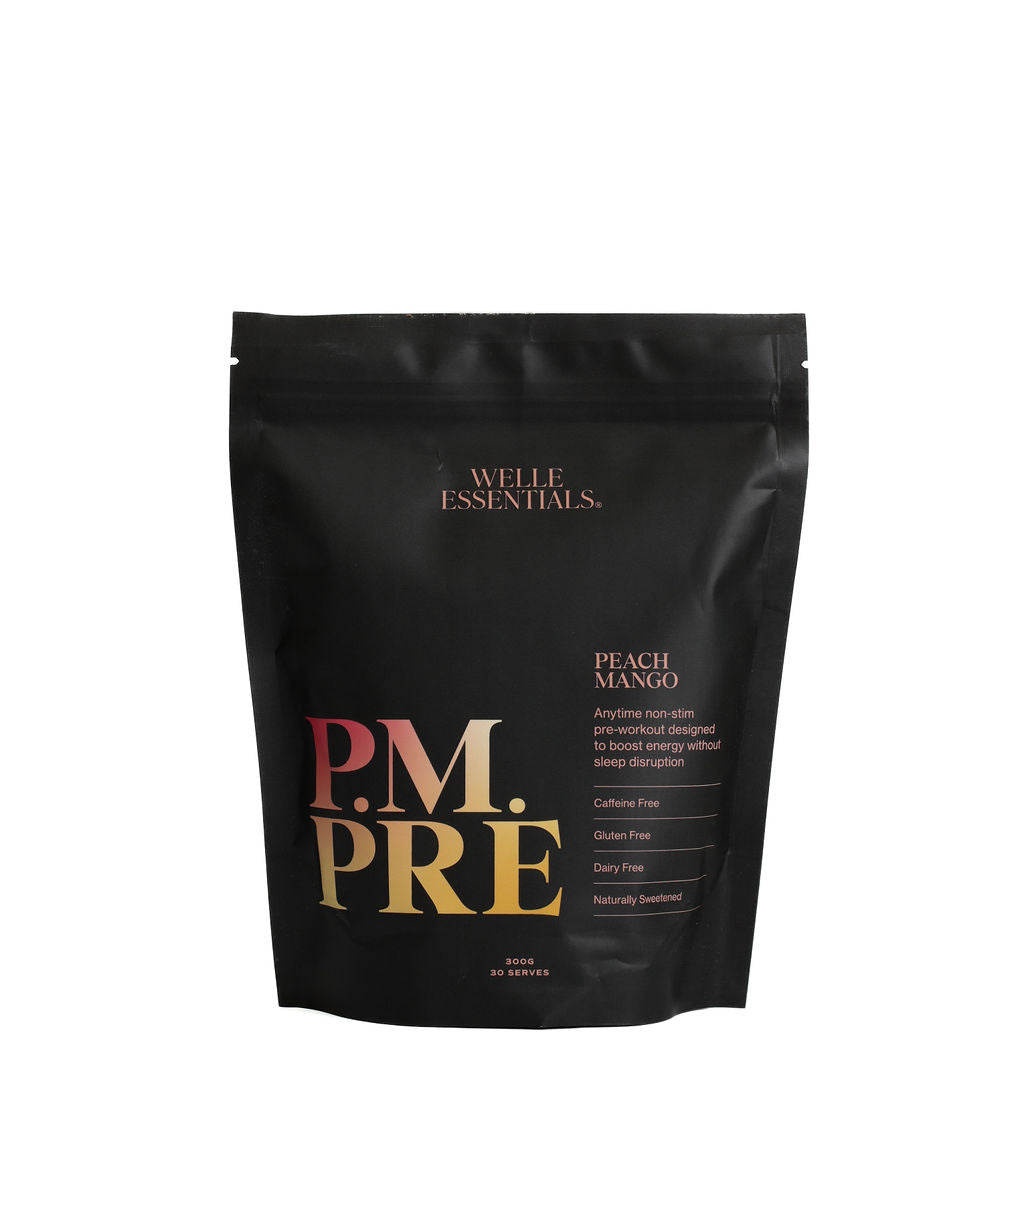 P.M. PRE - Peach Mango